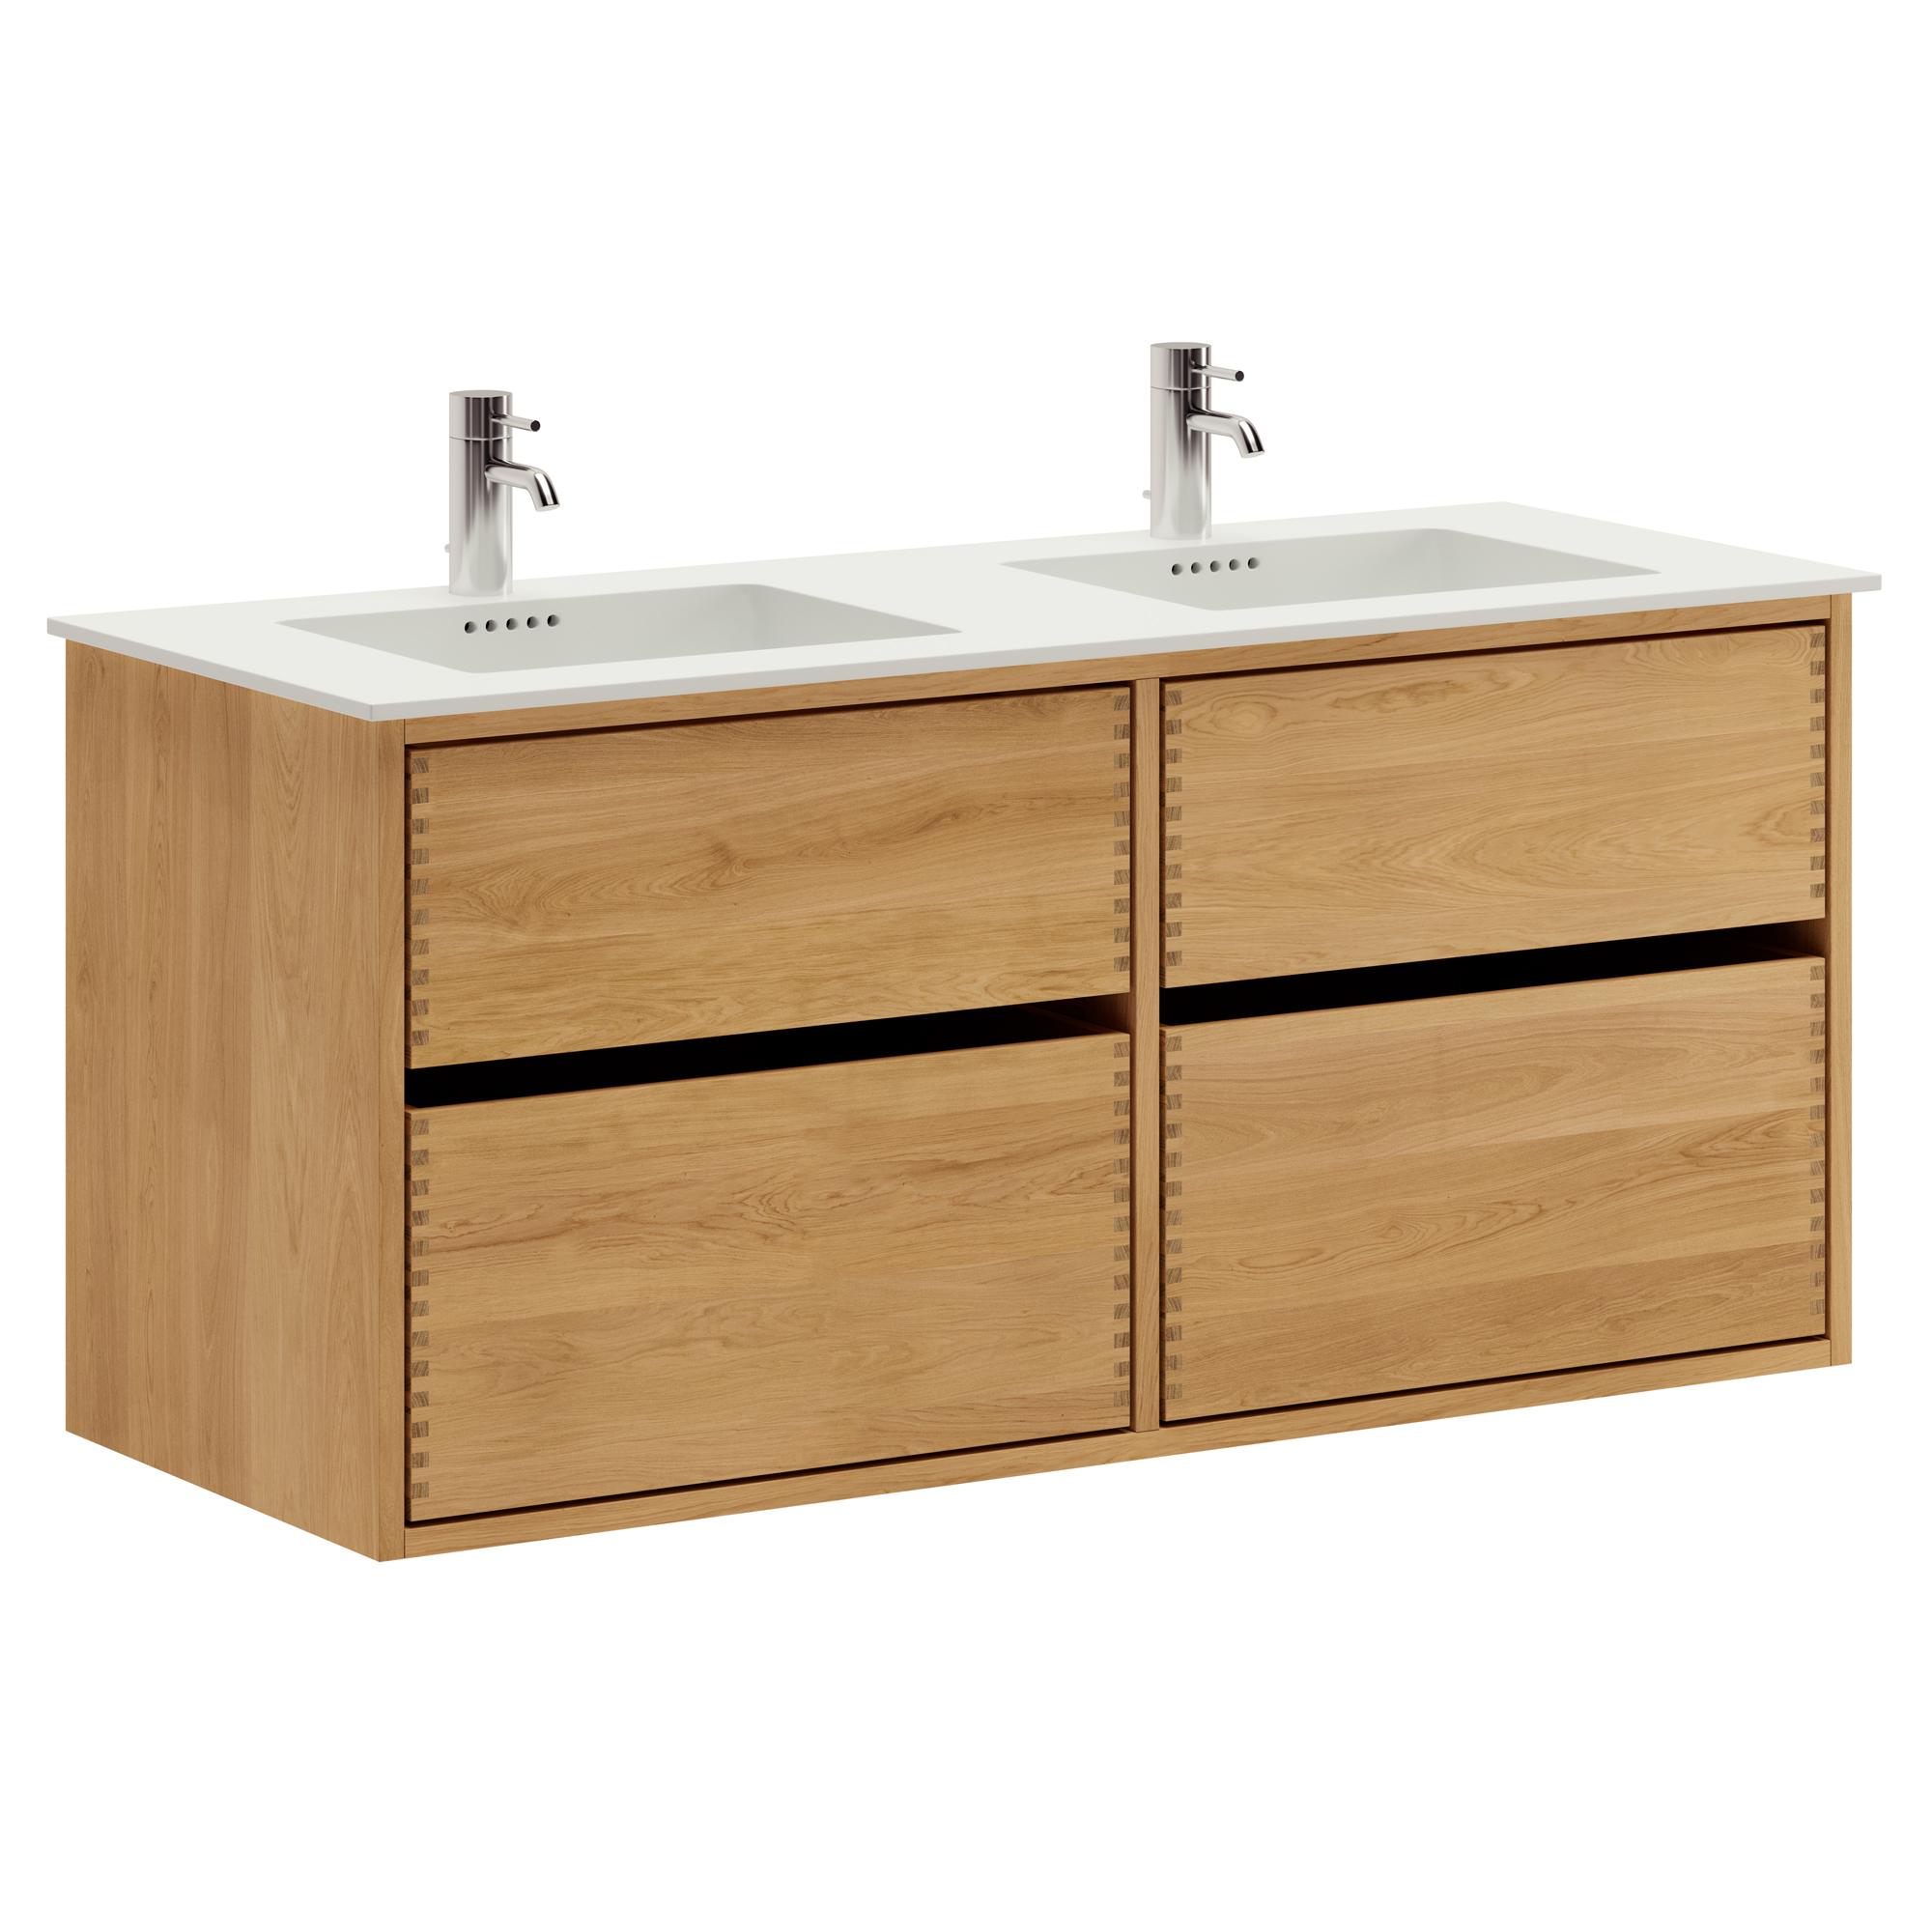 120 cm Just Wood Original Badezimmermöbel mit 4 Schubladen und Solid Surface-Waschbecken - Doppelwaschbecken